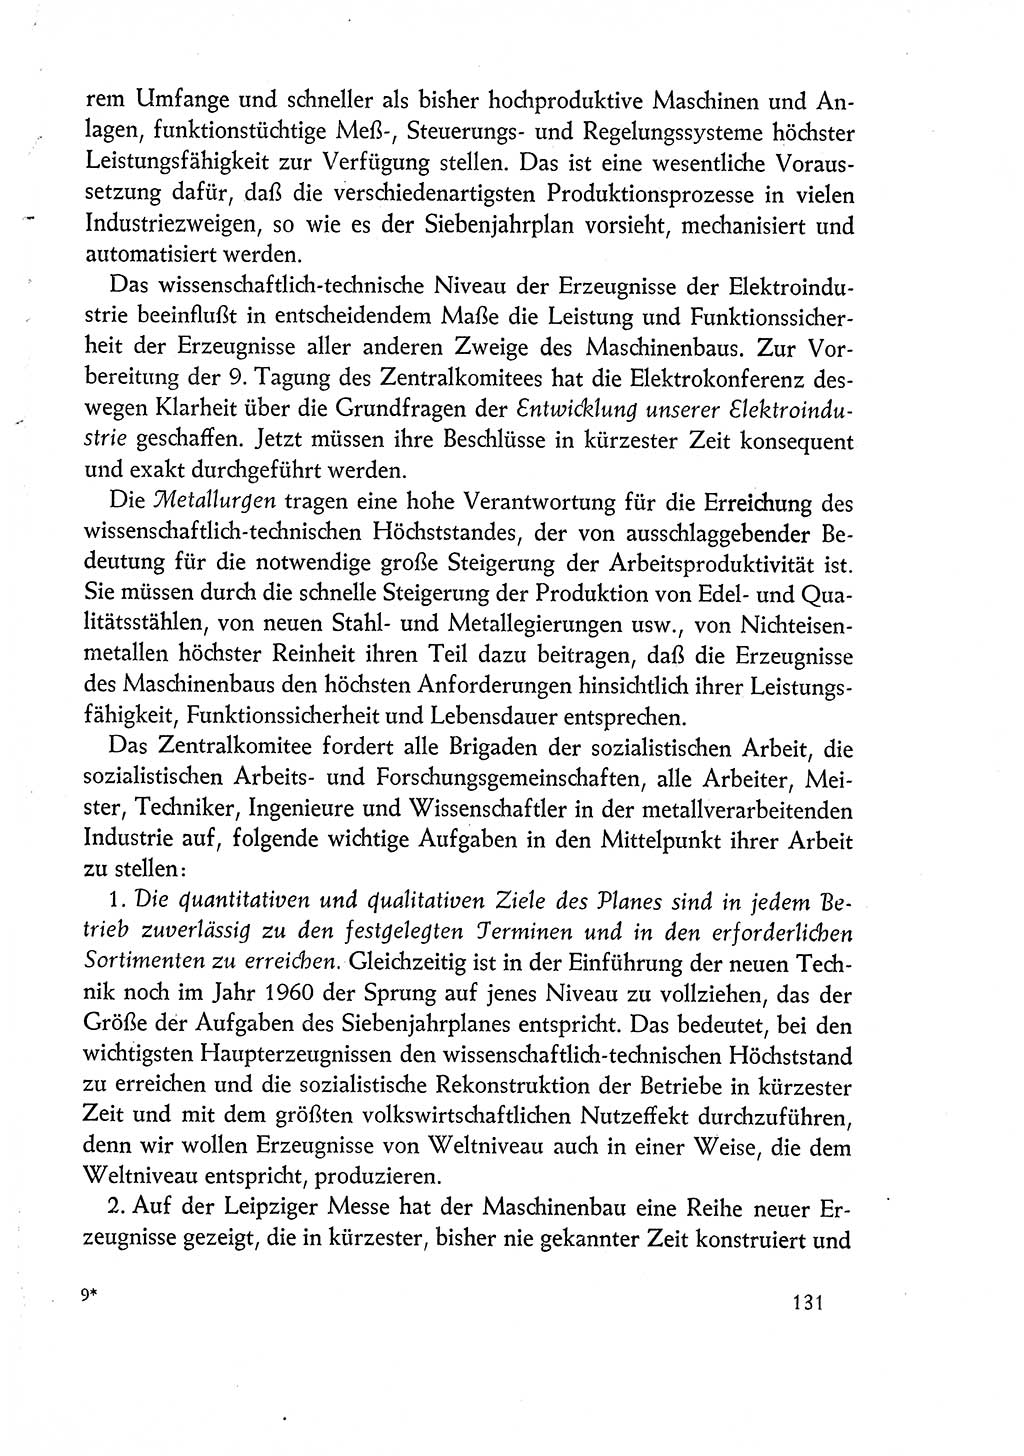 Dokumente der Sozialistischen Einheitspartei Deutschlands (SED) [Deutsche Demokratische Republik (DDR)] 1960-1961, Seite 131 (Dok. SED DDR 1960-1961, S. 131)